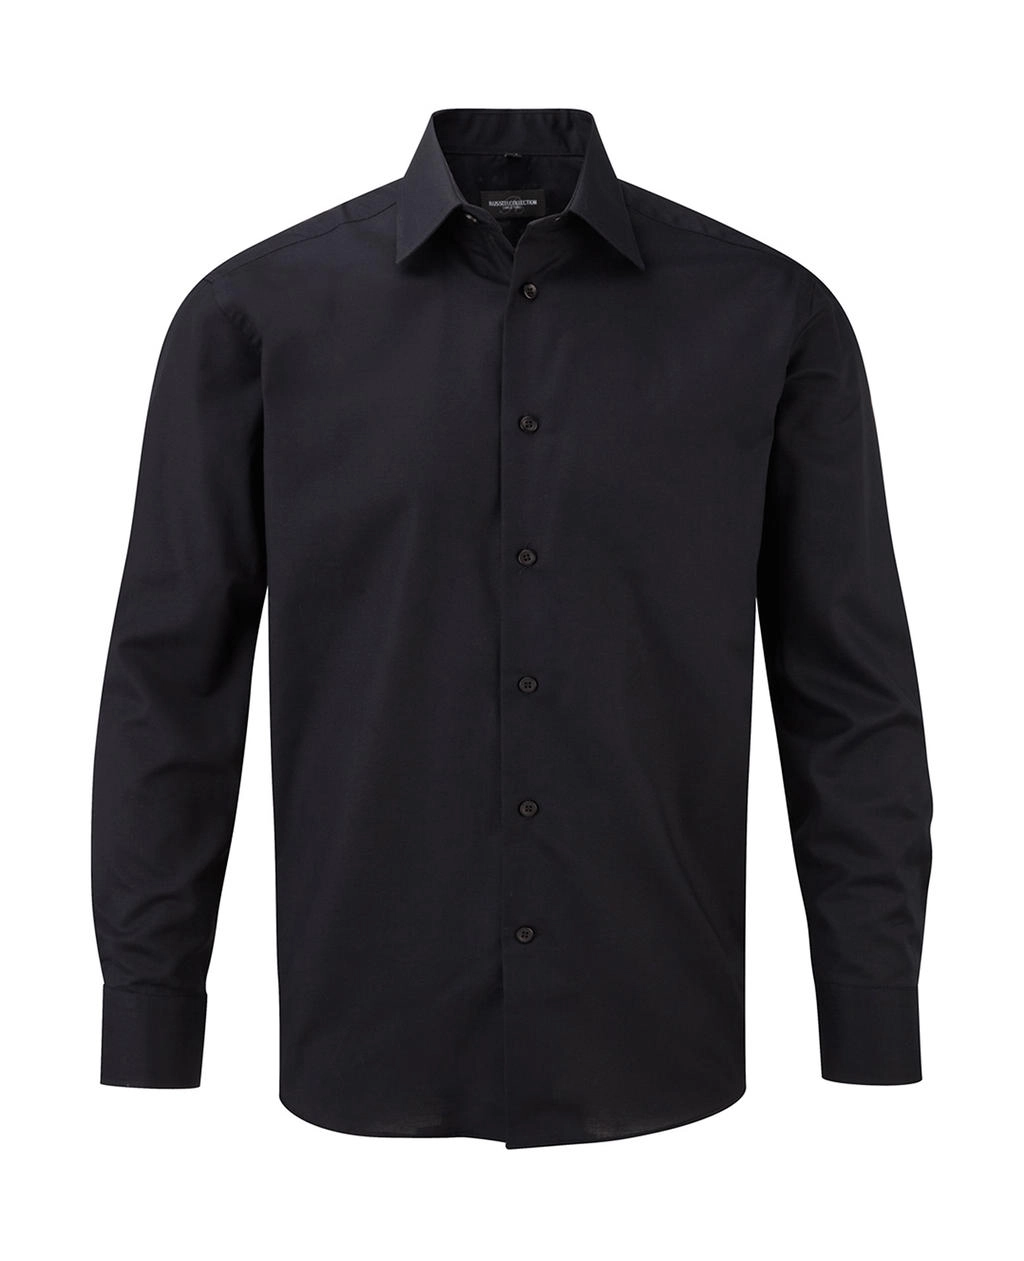 Oxford Shirt LS zum Besticken und Bedrucken in der Farbe Black mit Ihren Logo, Schriftzug oder Motiv.